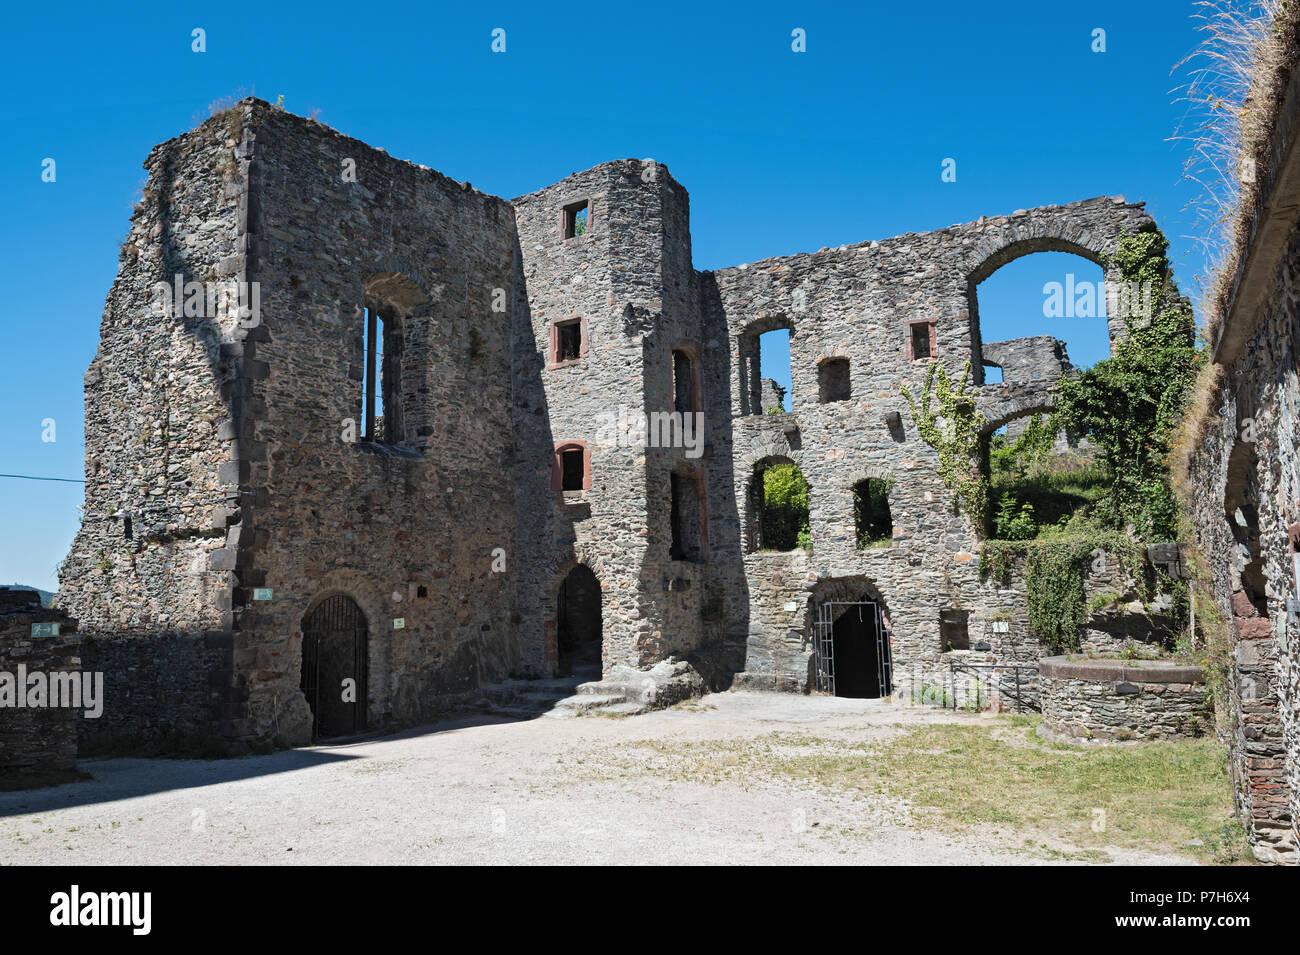 La ruina del castillo de Königstein en el Taunus, vista interior, Alemania Foto de stock